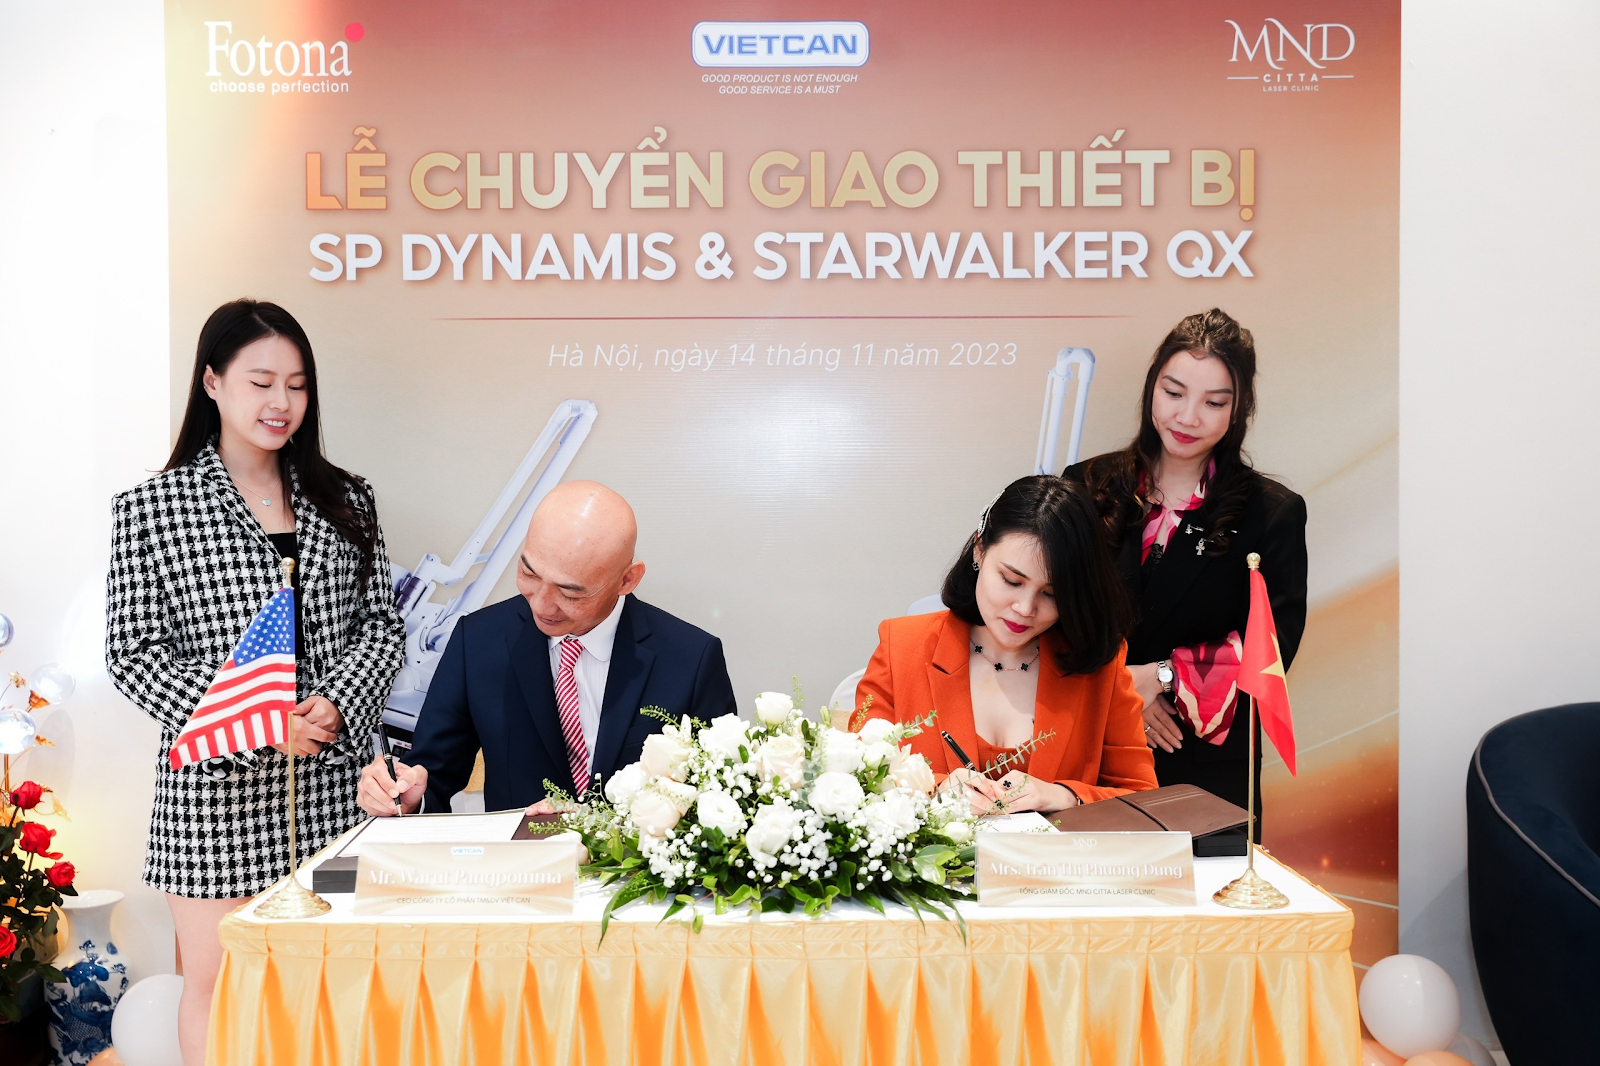 Fotona SP Dynamis và StarWalker QX, MND Citta Laser Clinic